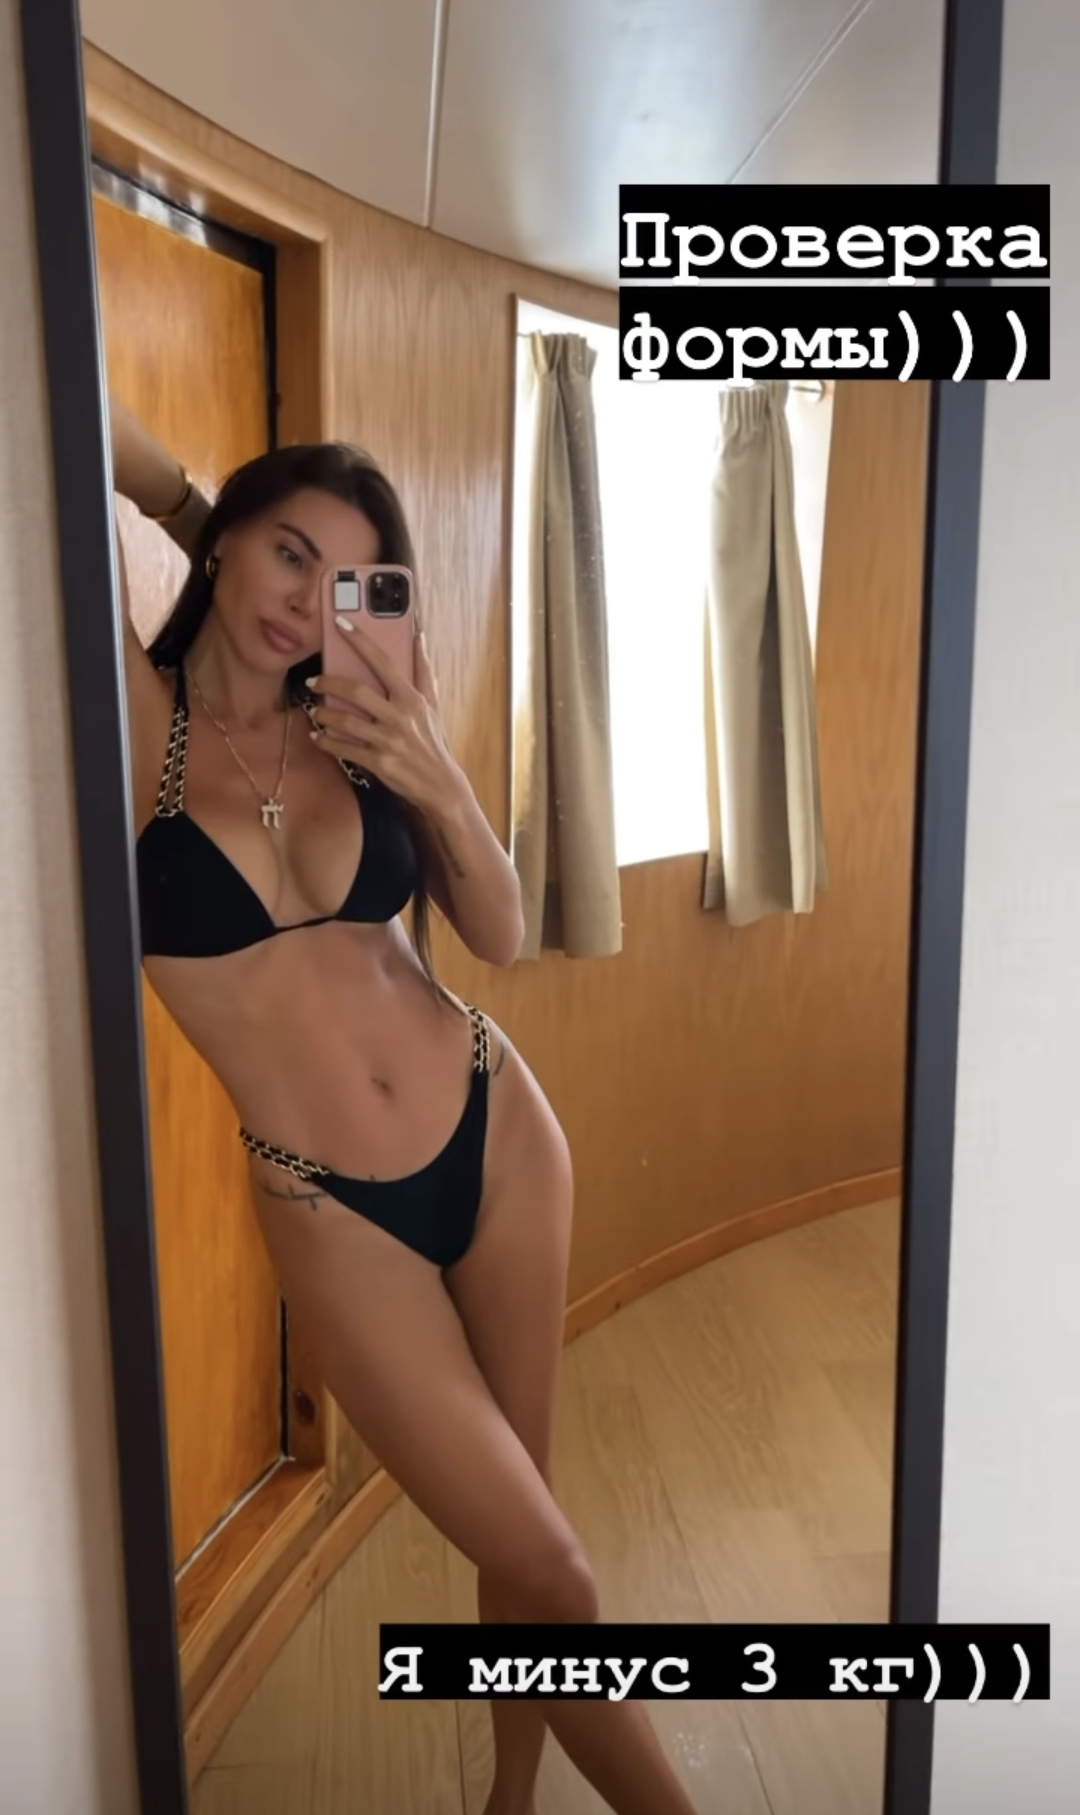 Оксана Самойлова скинула ещё 3 килограмма, став совсем тощей